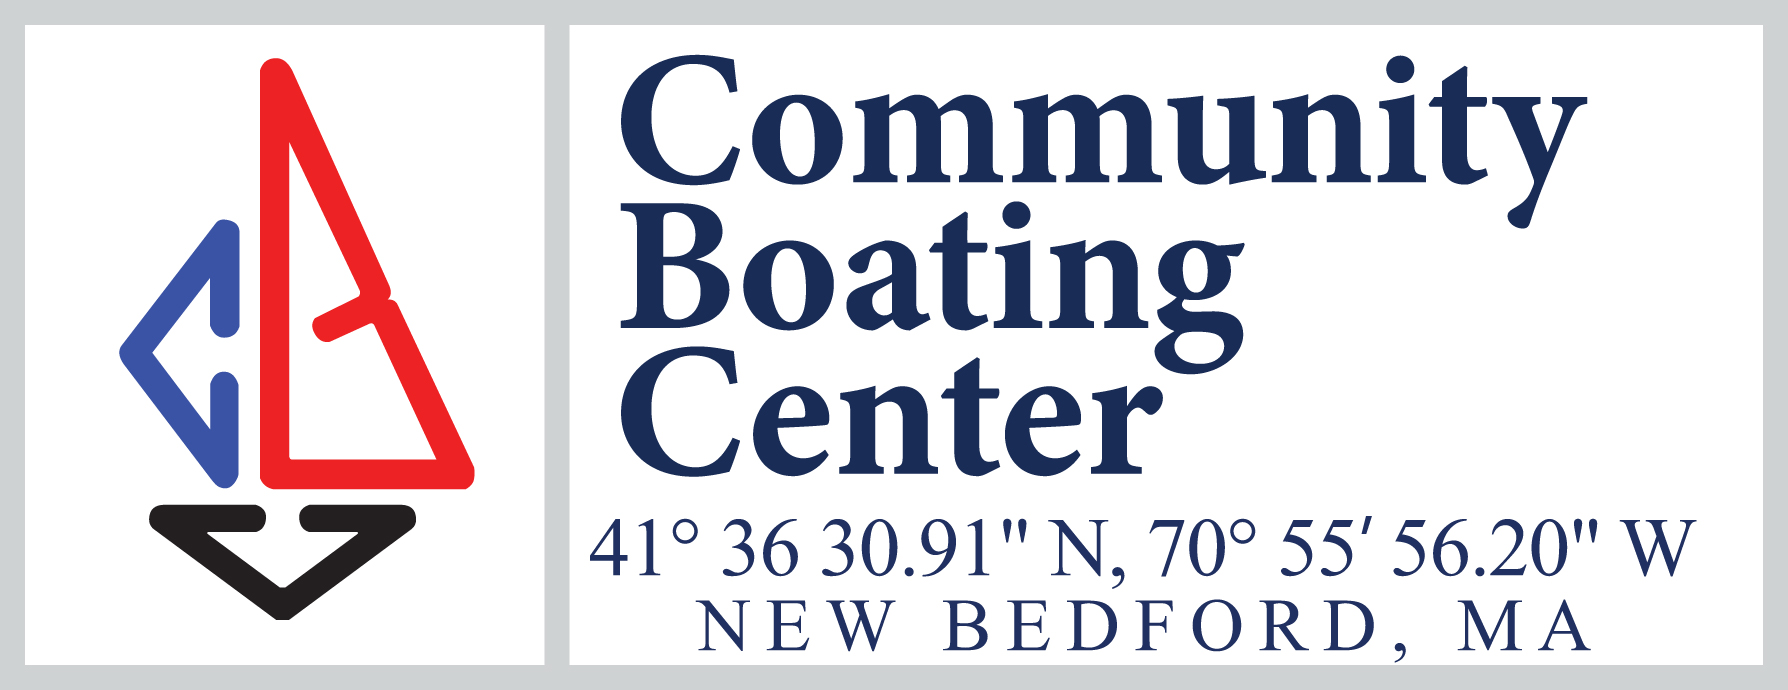 Community Boating Server Logo